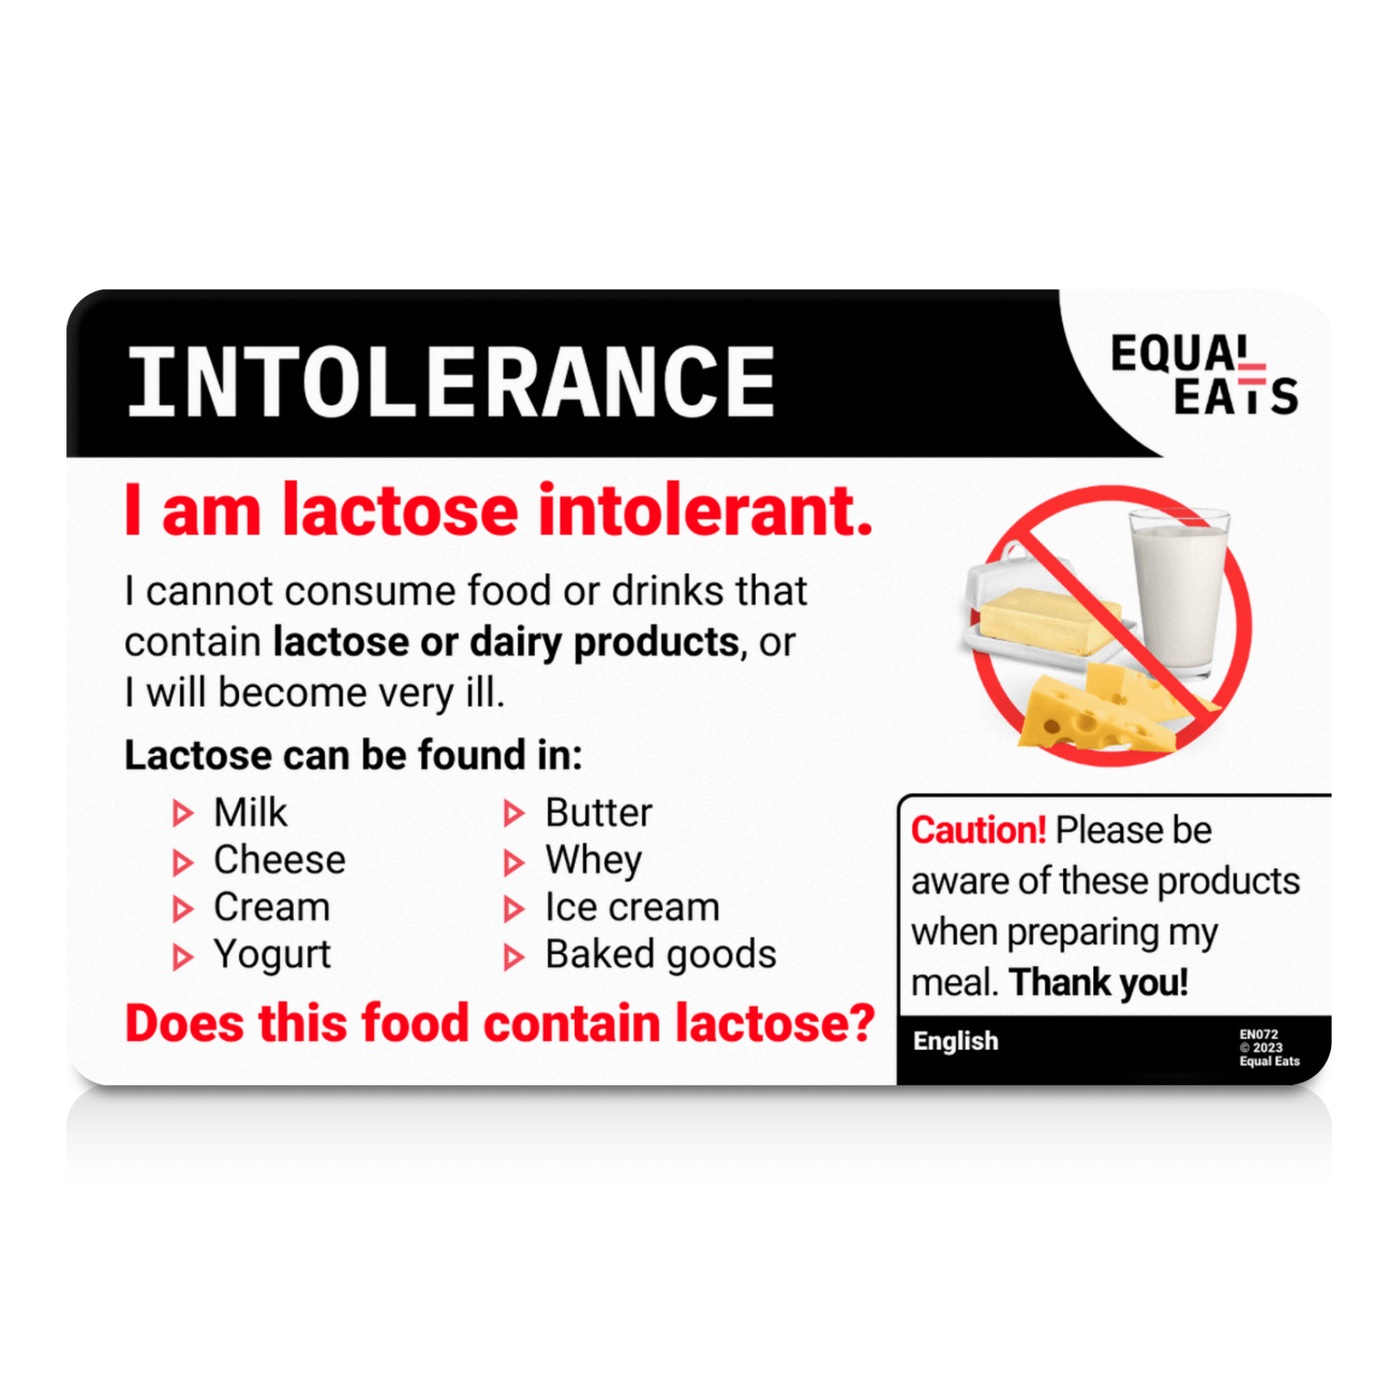 Croatian Lactose Intolerance Card